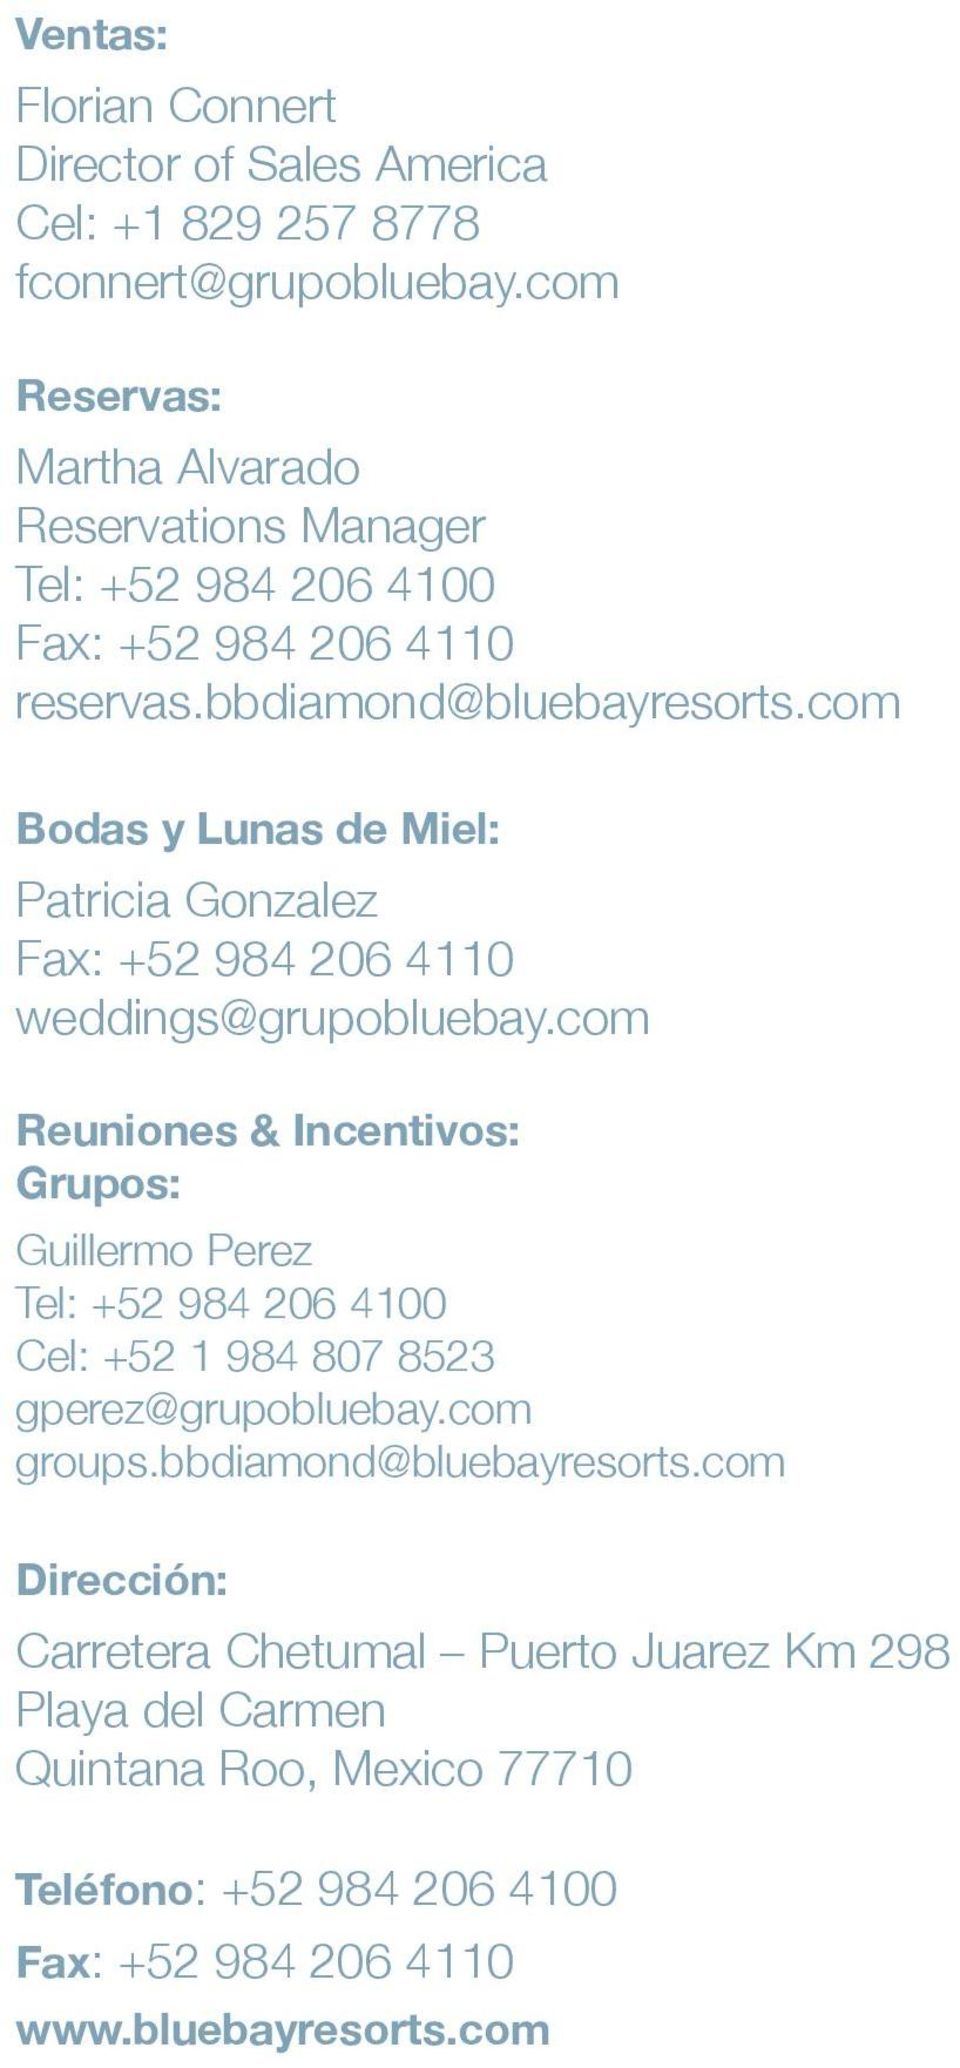 com Bodas y Lunas de Miel: Patricia Gonzalez Fax: +52 984 206 4110 weddings@grupobluebay.